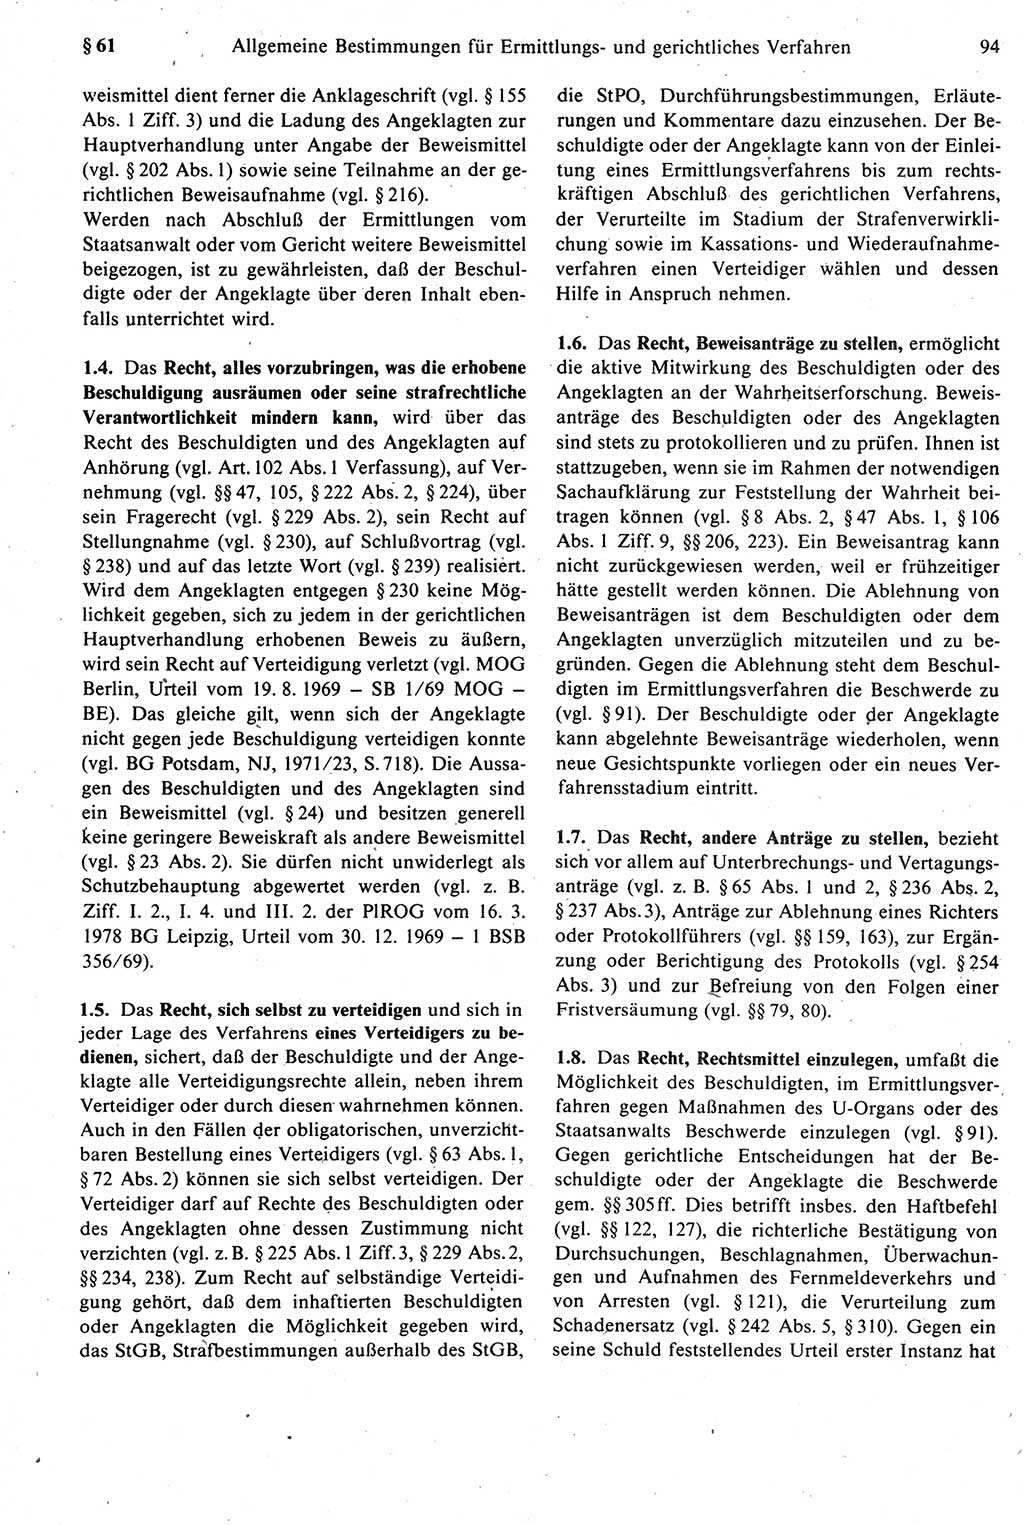 Strafprozeßrecht der DDR [Deutsche Demokratische Republik], Kommentar zur Strafprozeßordnung (StPO) 1987, Seite 94 (Strafprozeßr. DDR Komm. StPO 1987, S. 94)